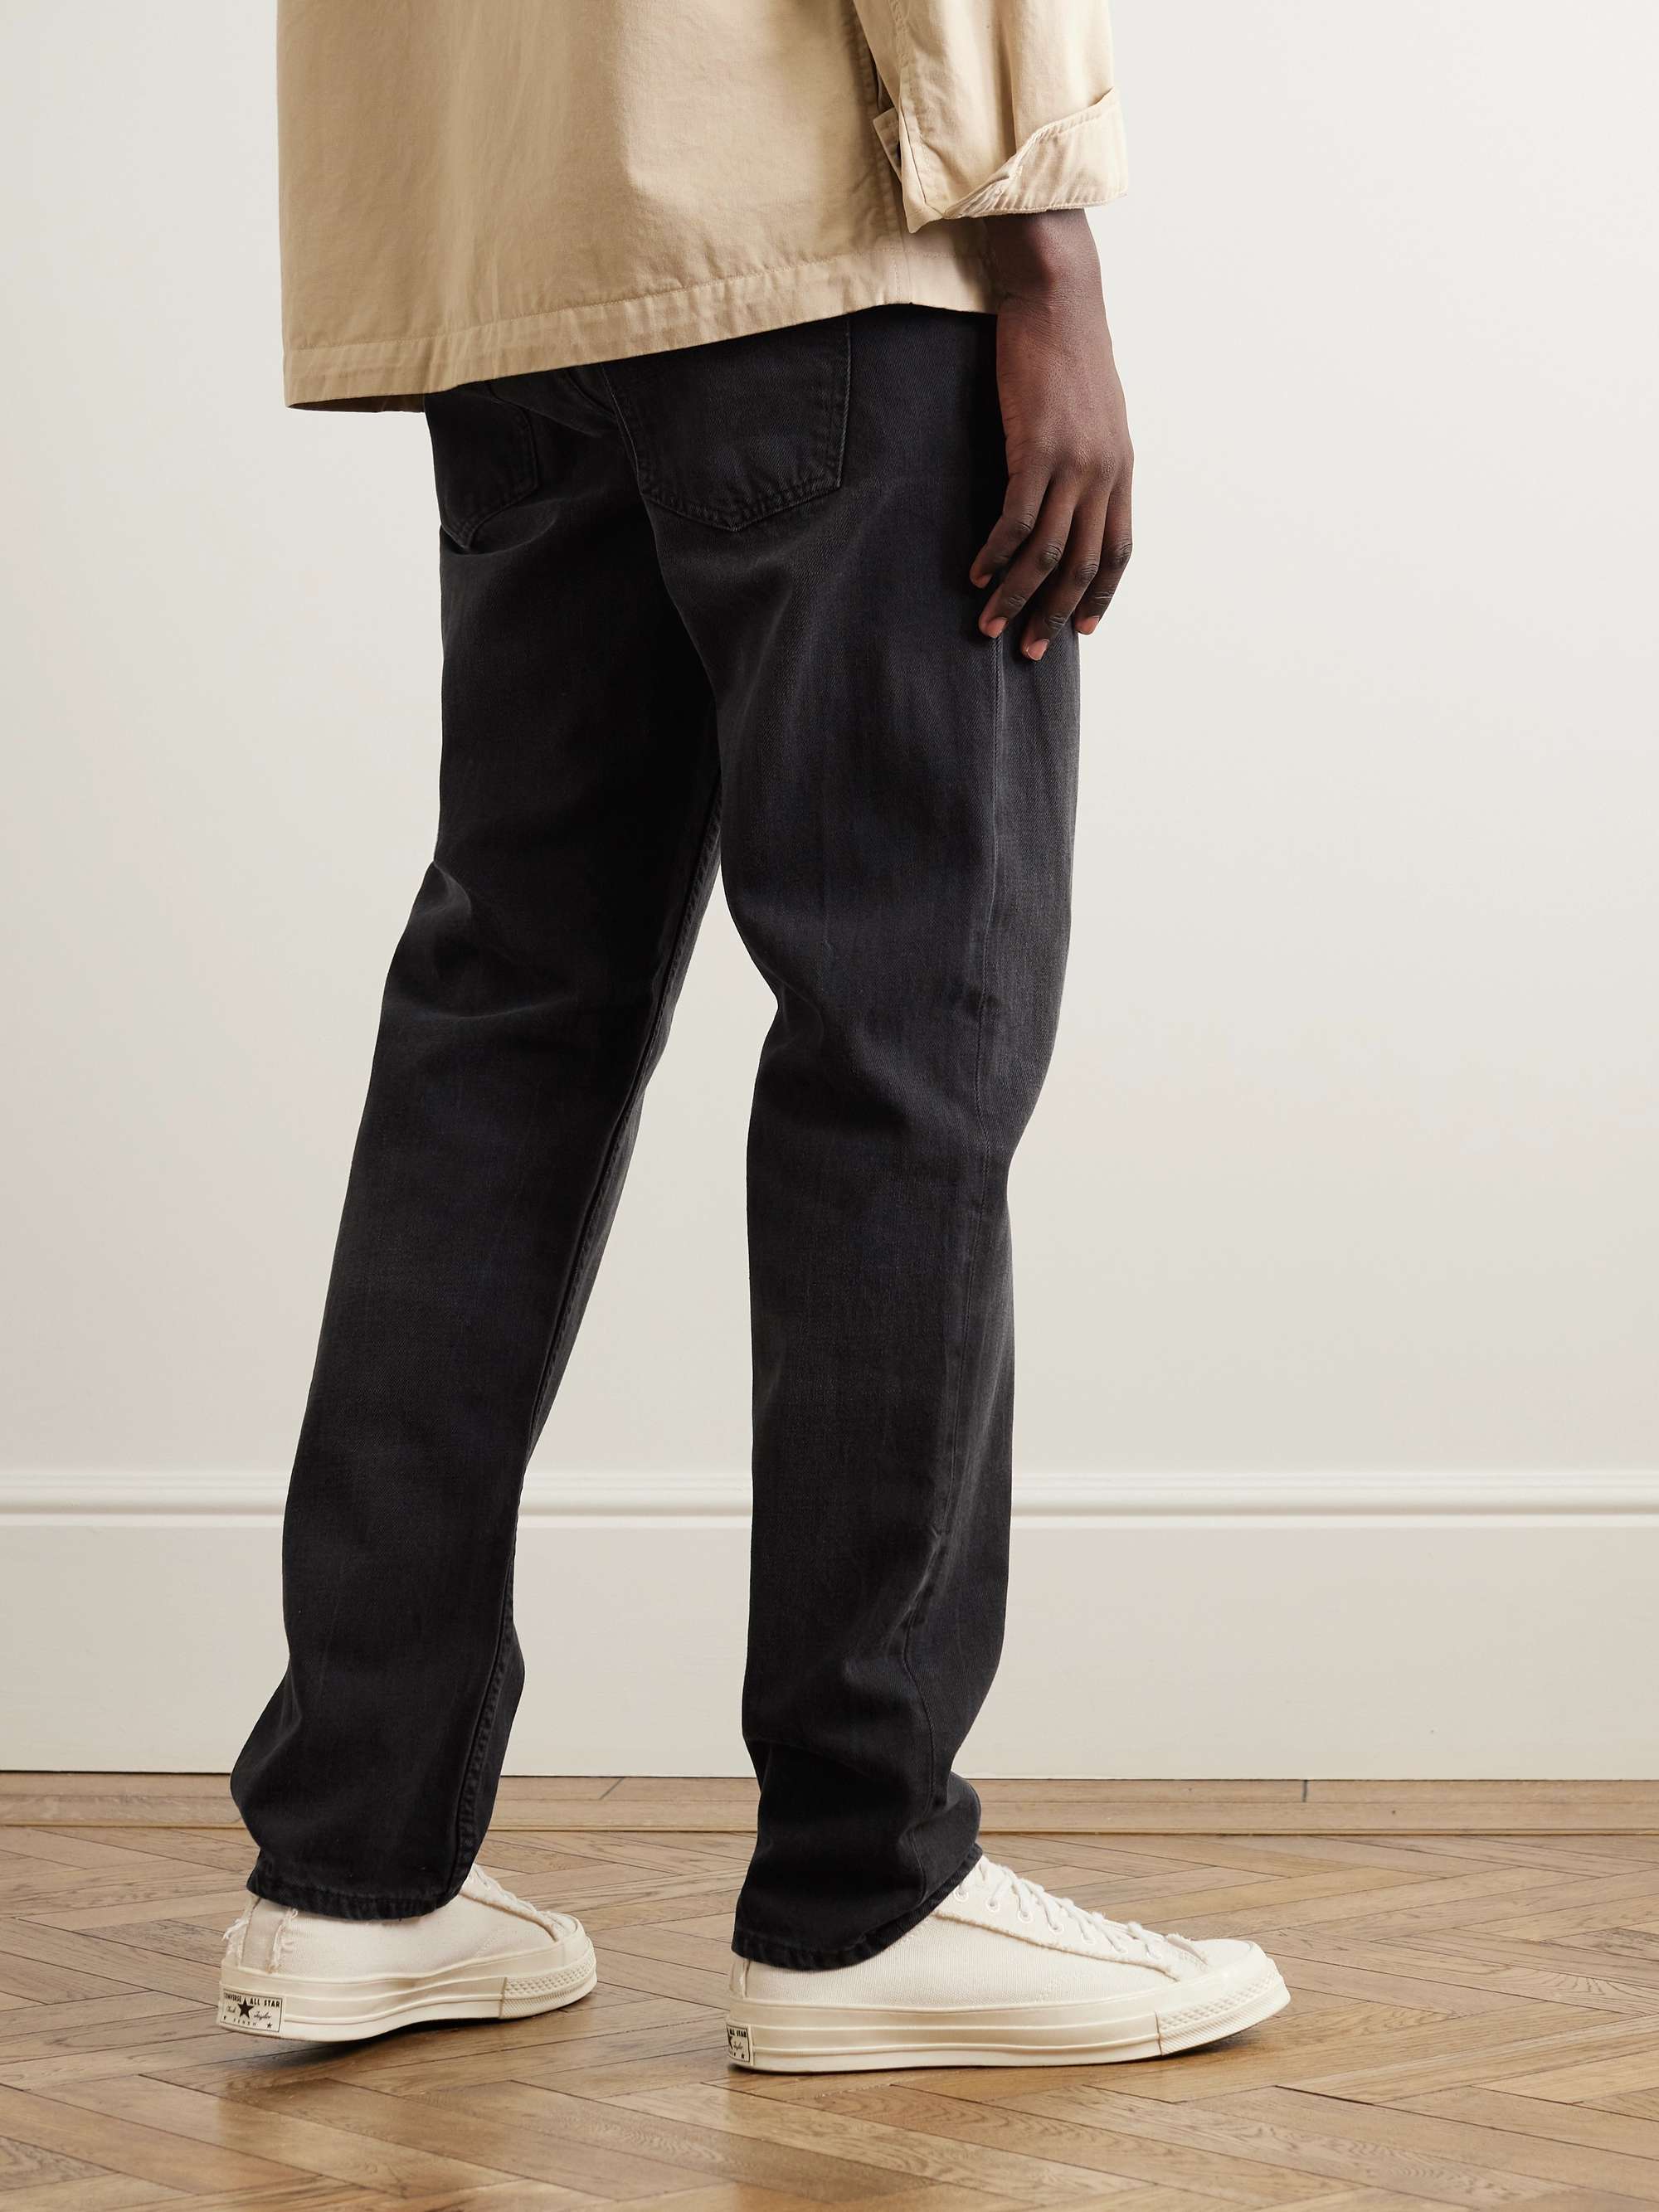 Black Steady Eddie II Tapered Organic Jeans | NUDIE JEANS | MR PORTER